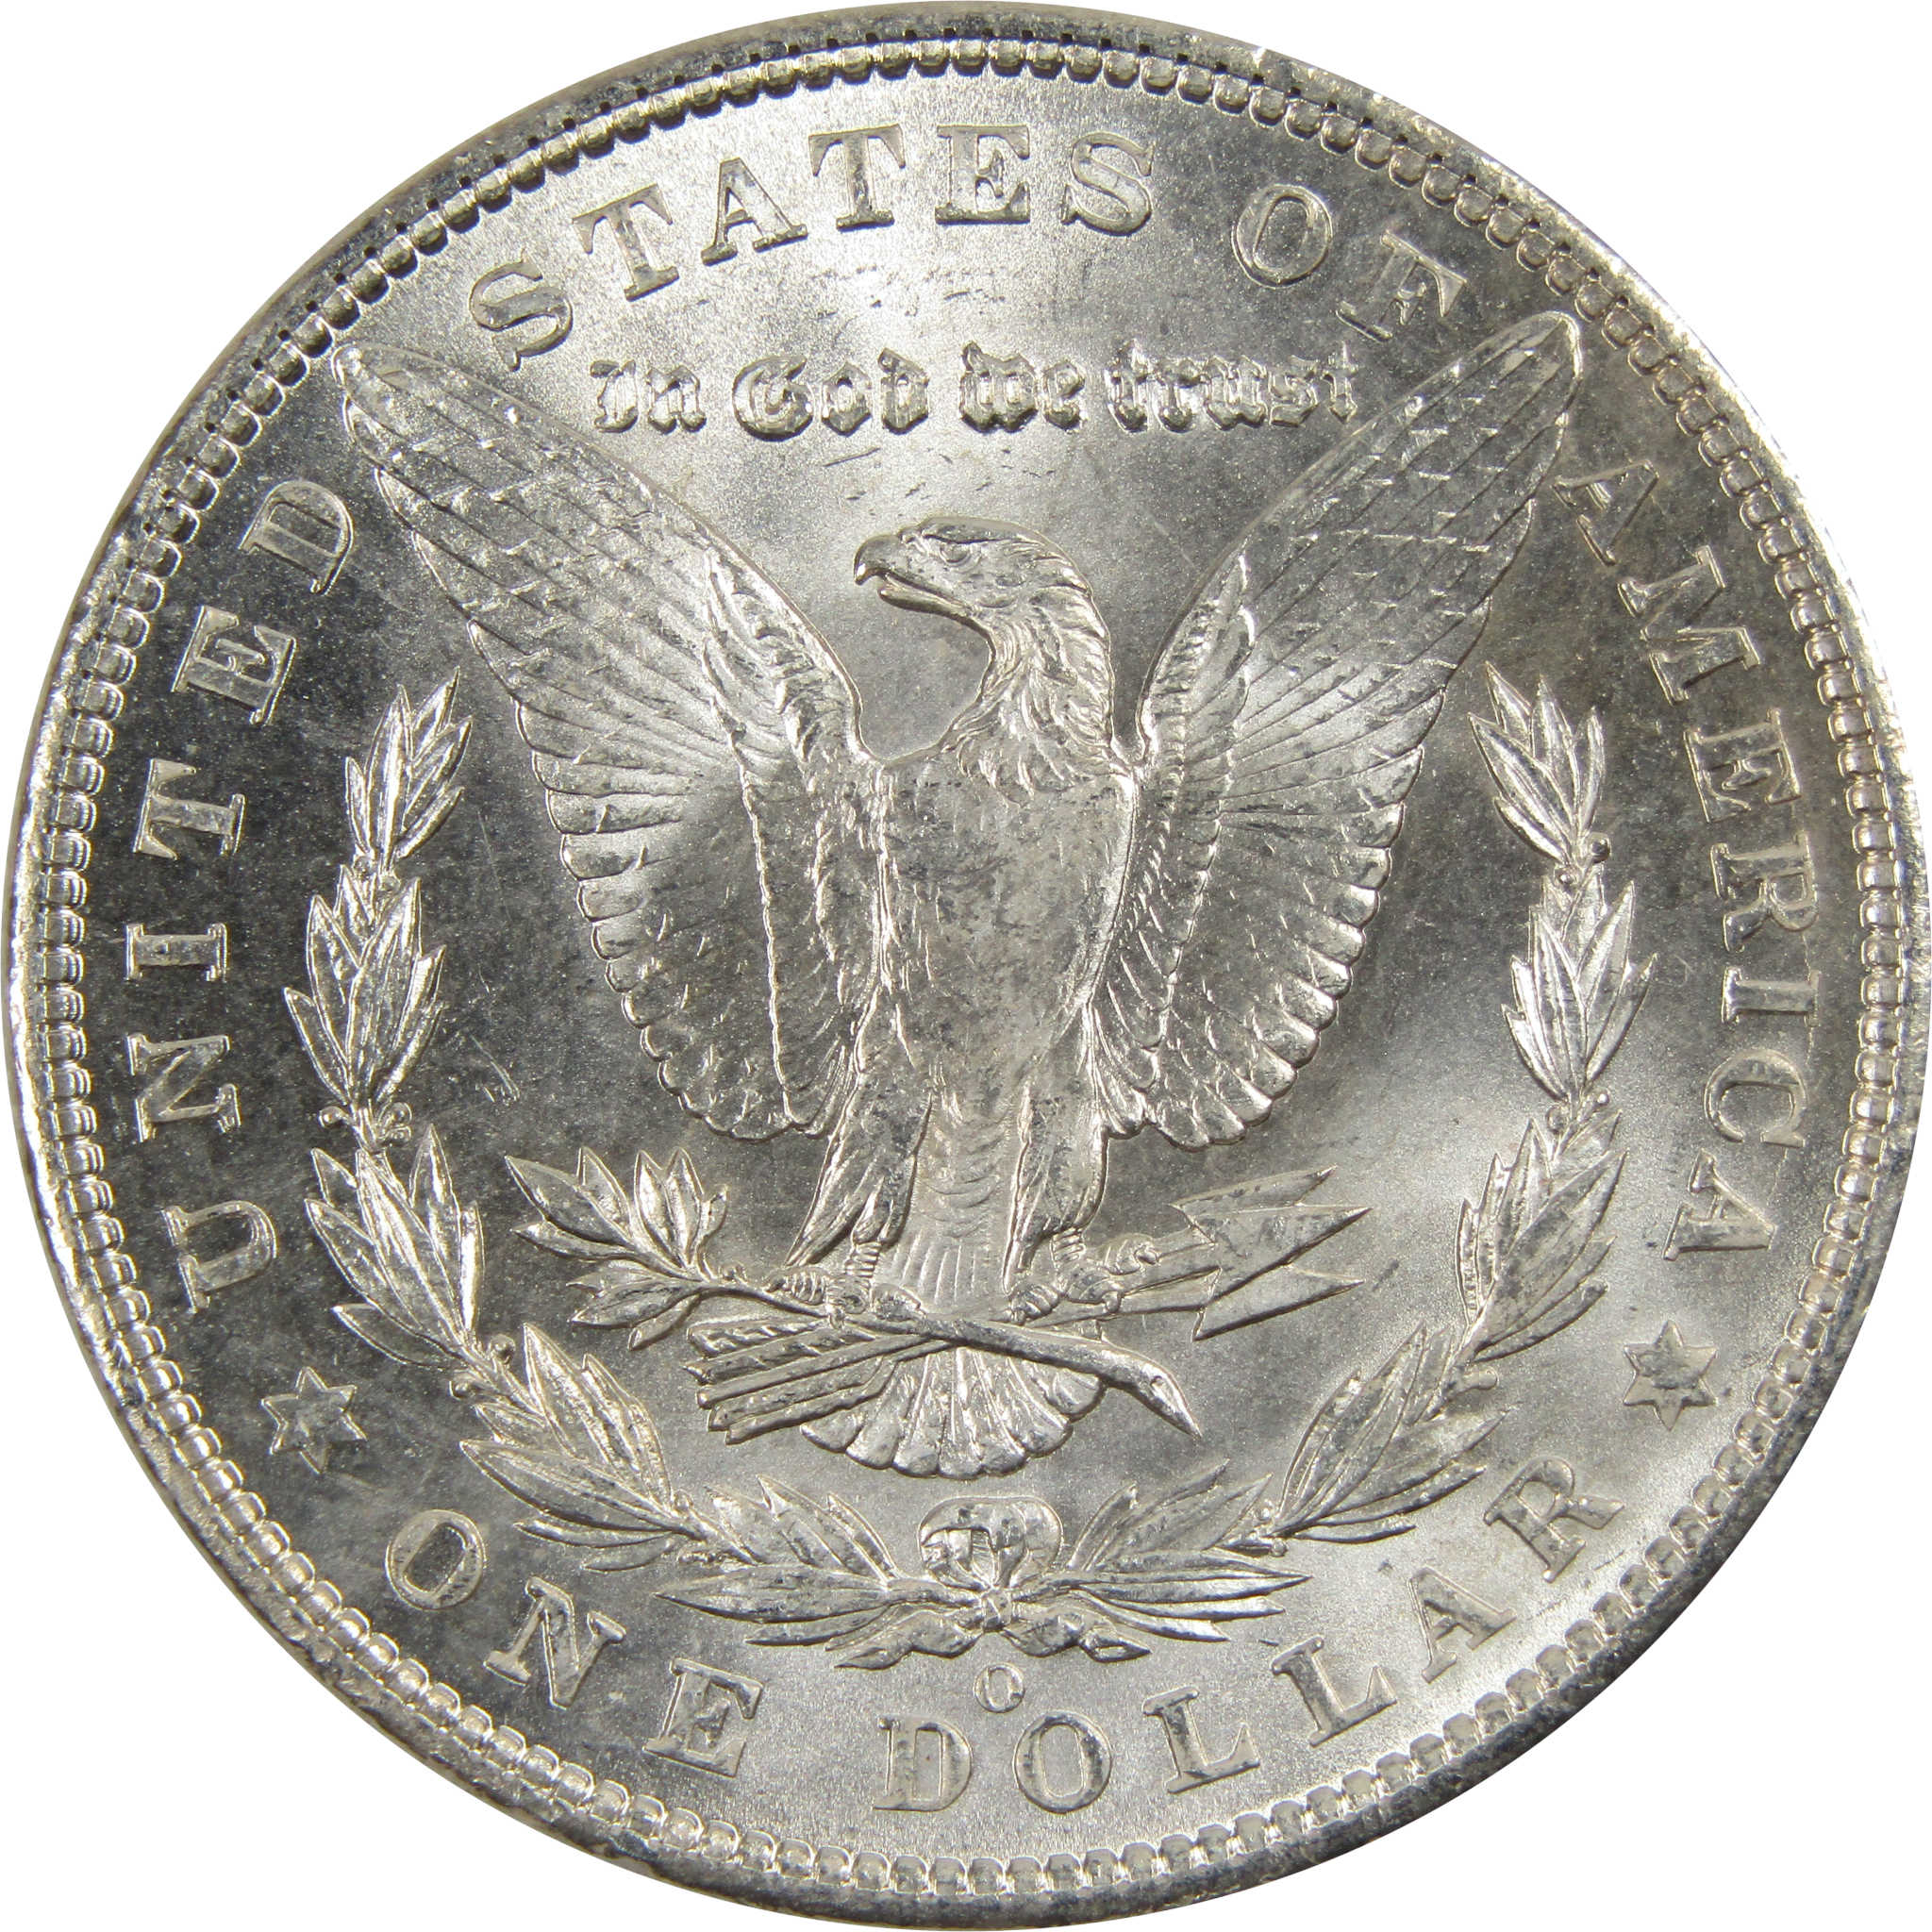 1903 O Morgan Dollar BU Choice Uncirculated 90% Silver $1 SKU:I7919 - Morgan coin - Morgan silver dollar - Morgan silver dollar for sale - Profile Coins &amp; Collectibles